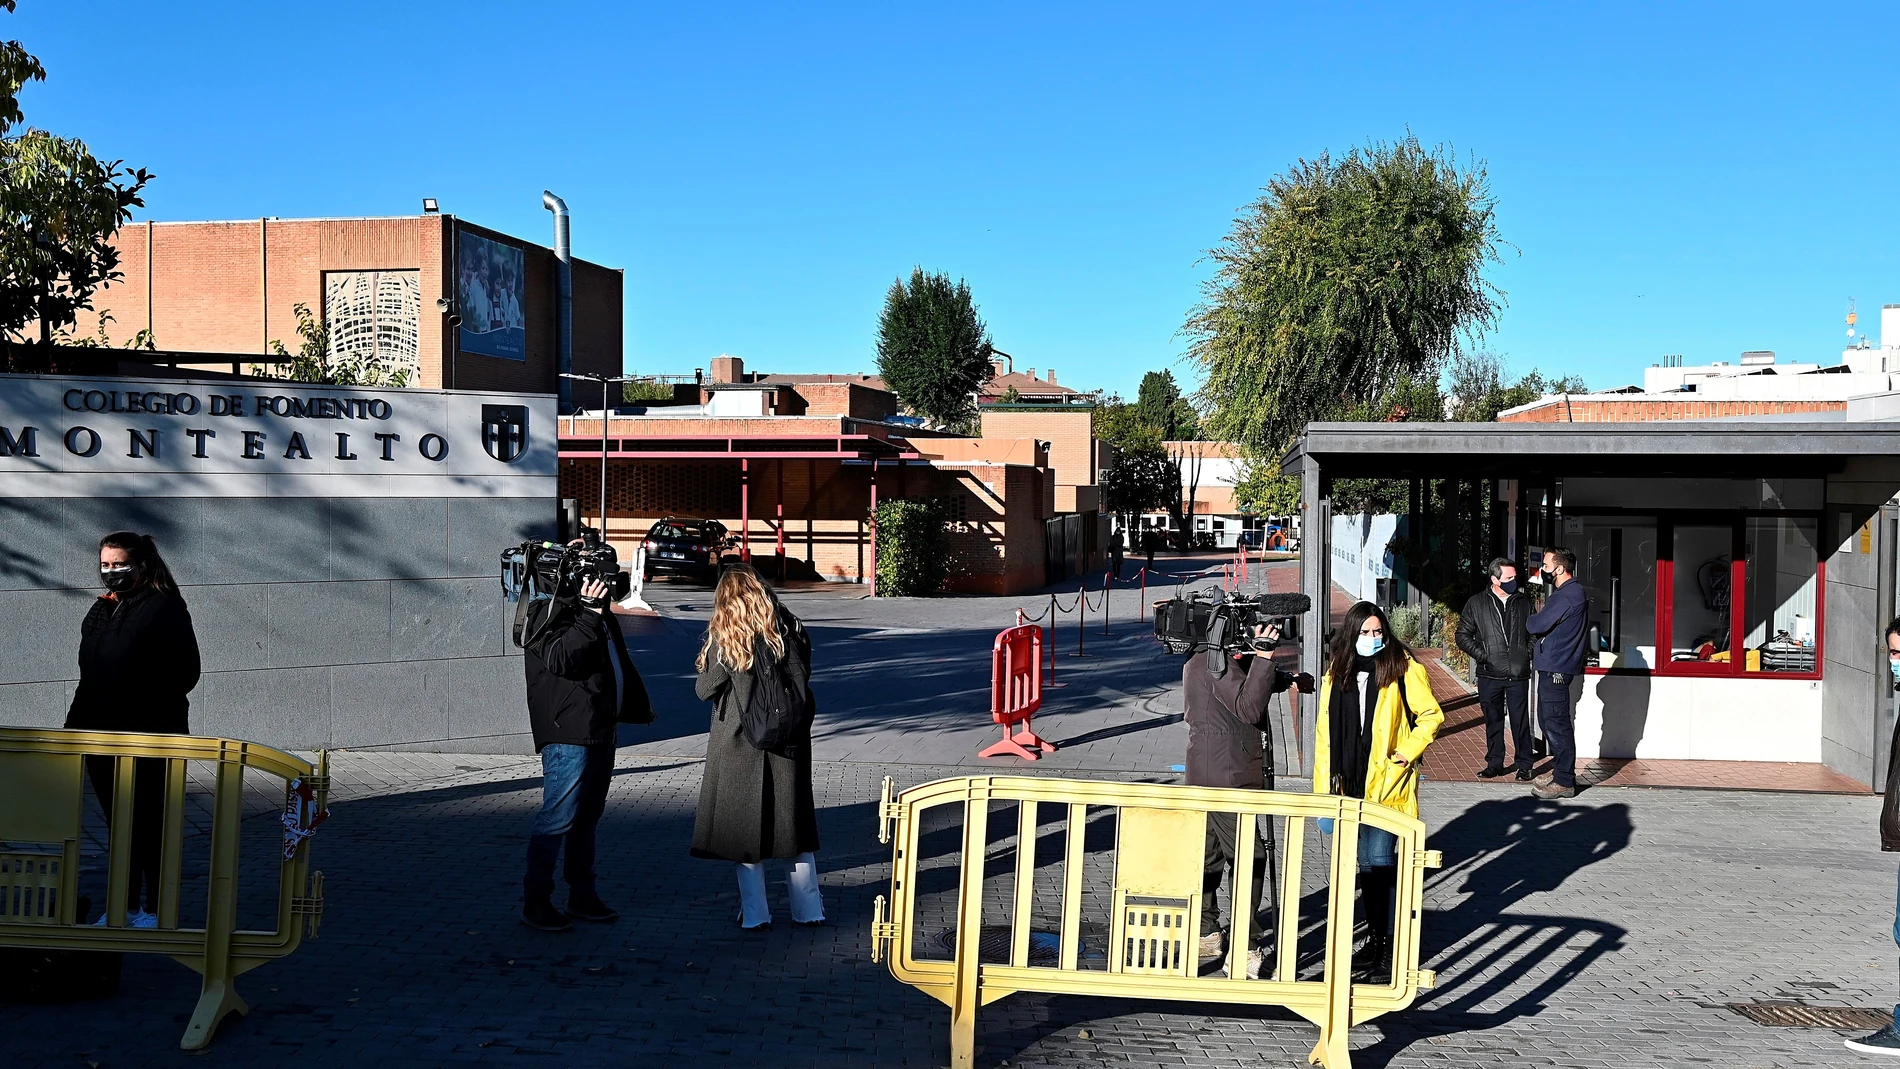 Vista de la entrada del colegio Fomento Montealto en el barrio de Mirasierra en Madrid este viernes.